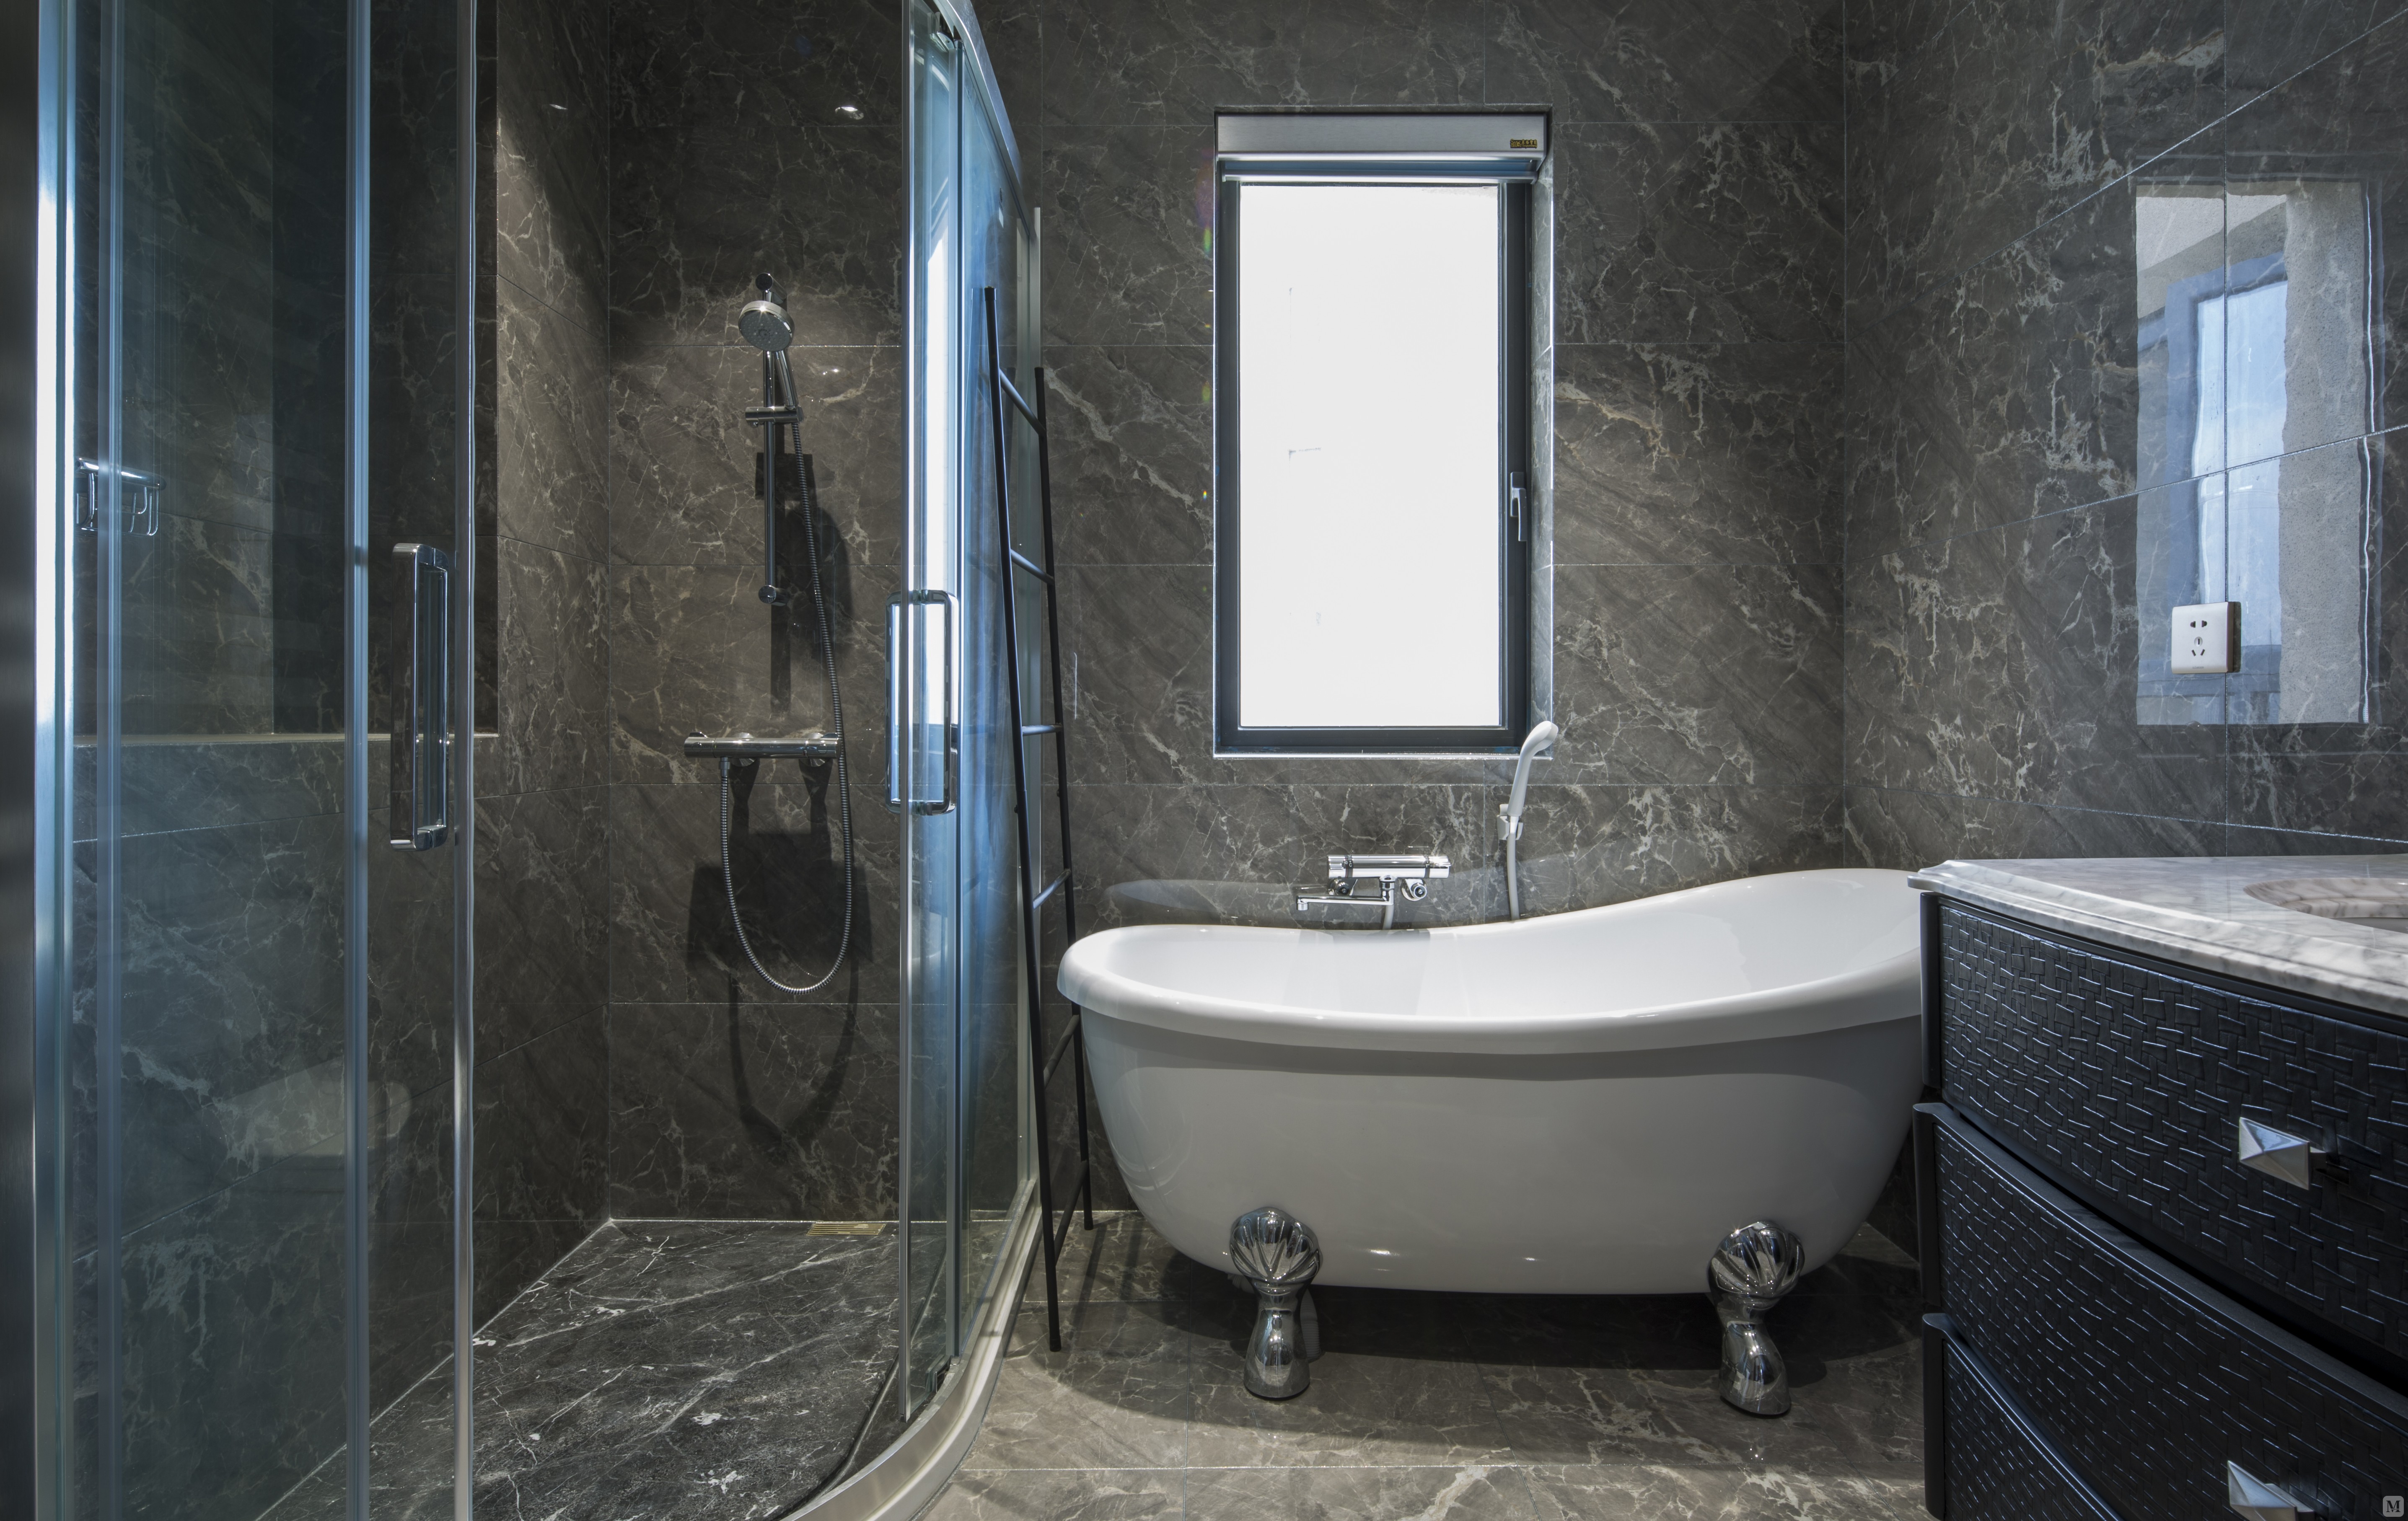 灰色大气的瓷砖给了整个卫生间品质的提升